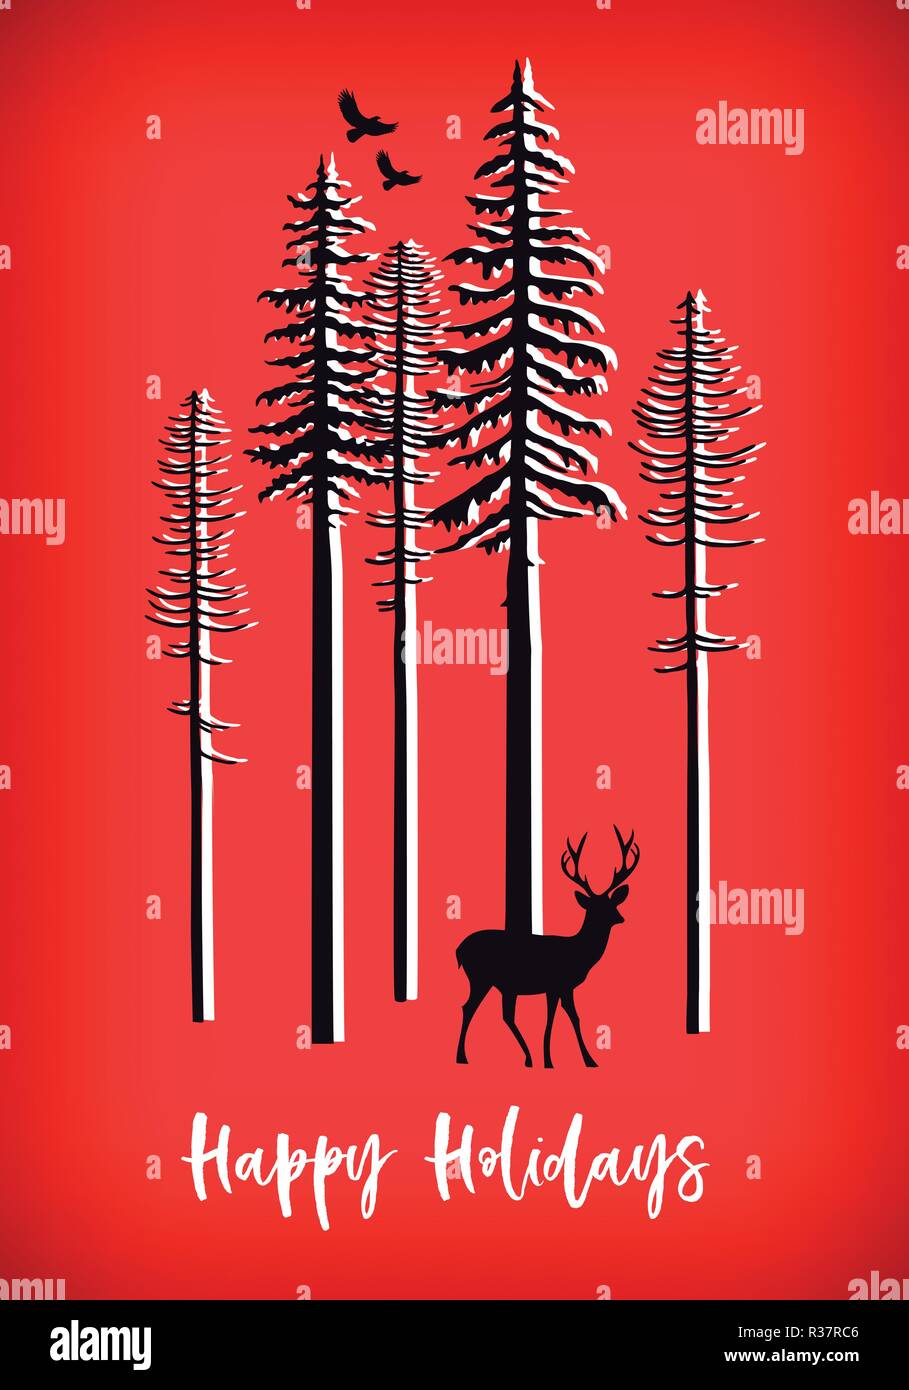 Weihnachtskarte mit Rentieren und Bäume, Vektor Stock Vektor